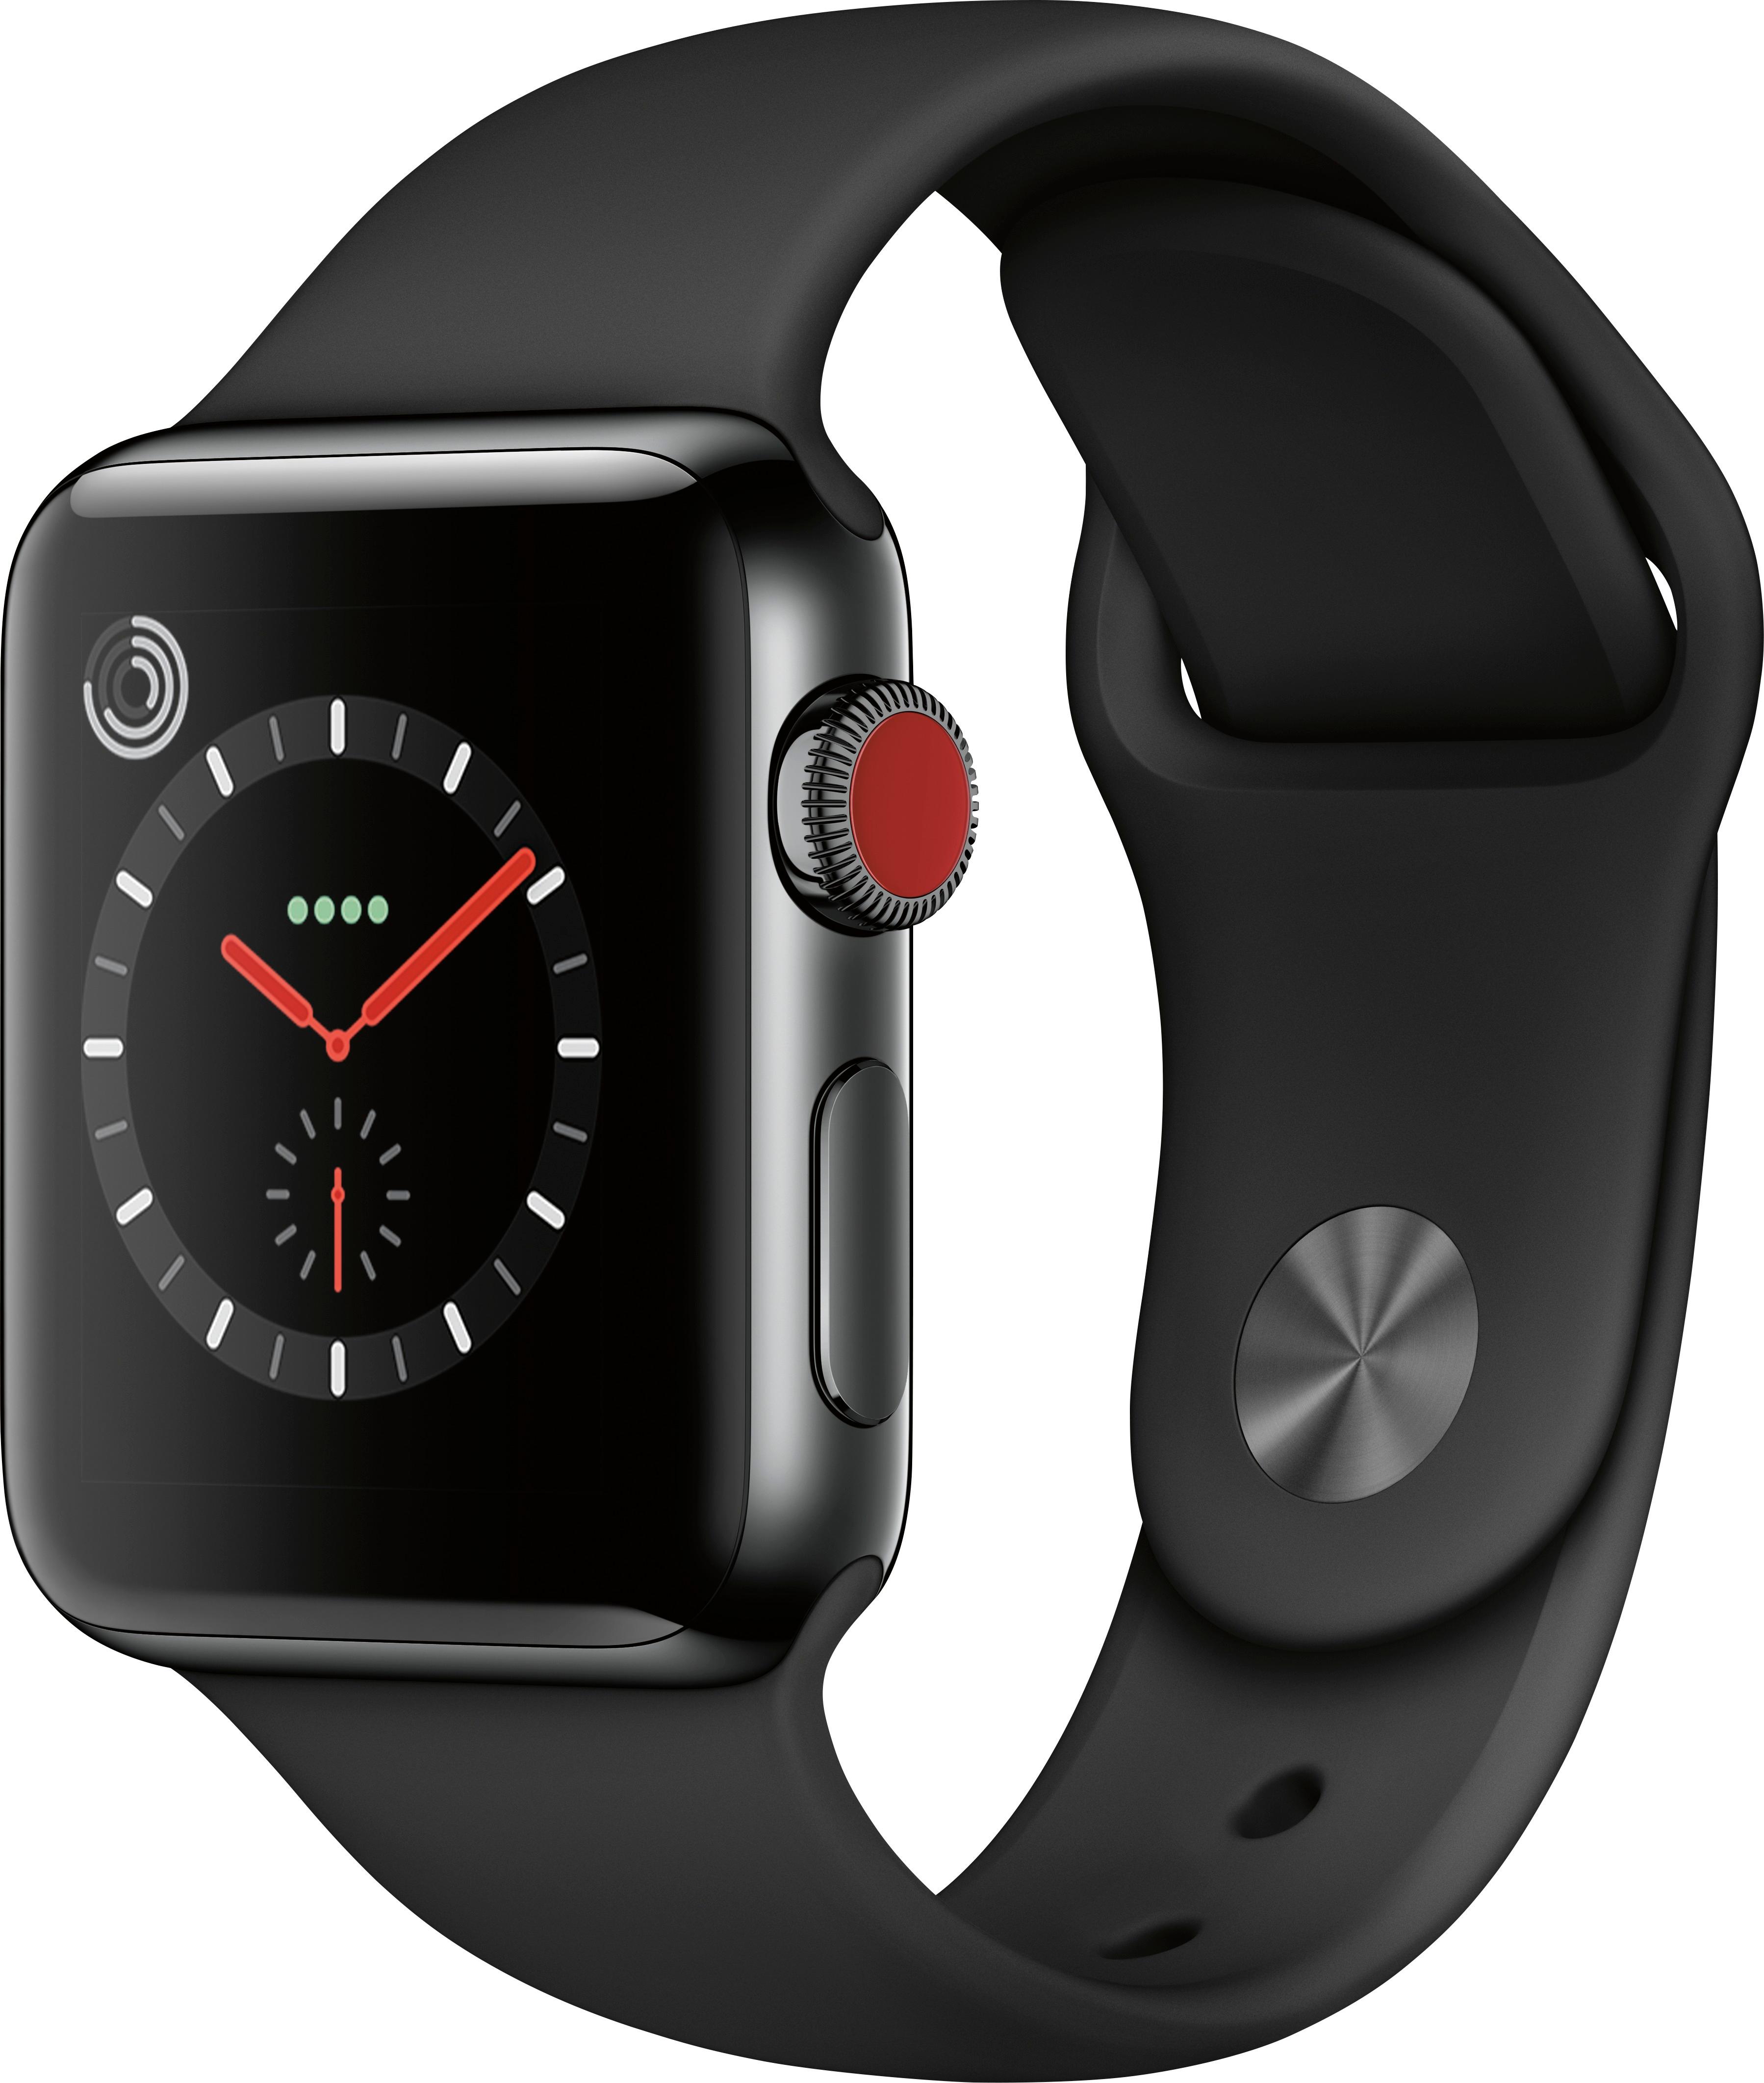 Best Buy: Geek Squad Certified Refurbished Apple Watch Series 3 